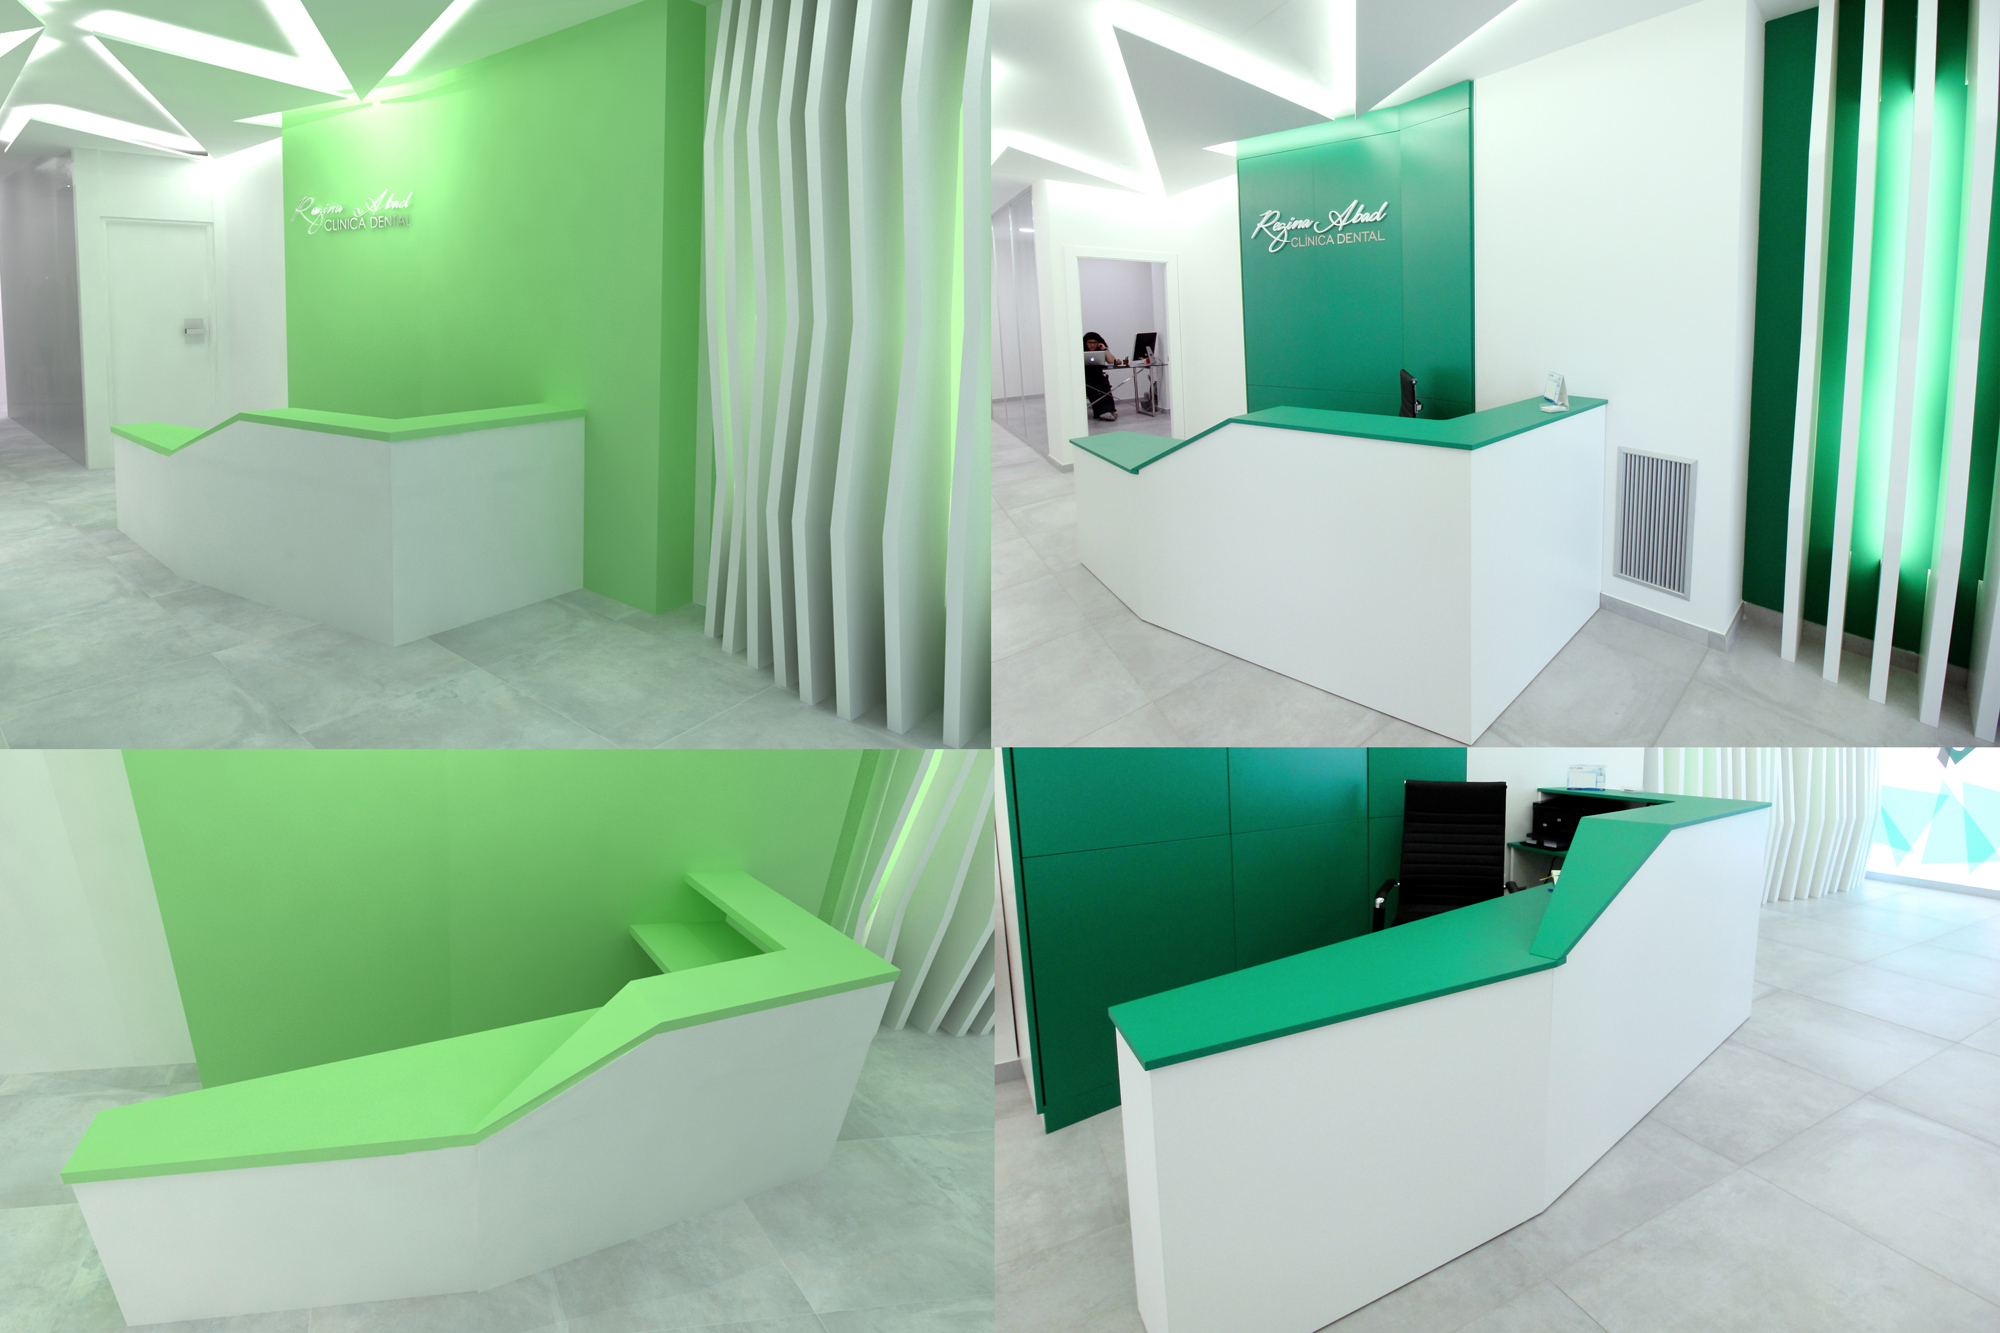 Diseño del mobiliario de la clínica. A la izquierda los diseños en modelo 3D, y a la derecha como quedaron finalmente.